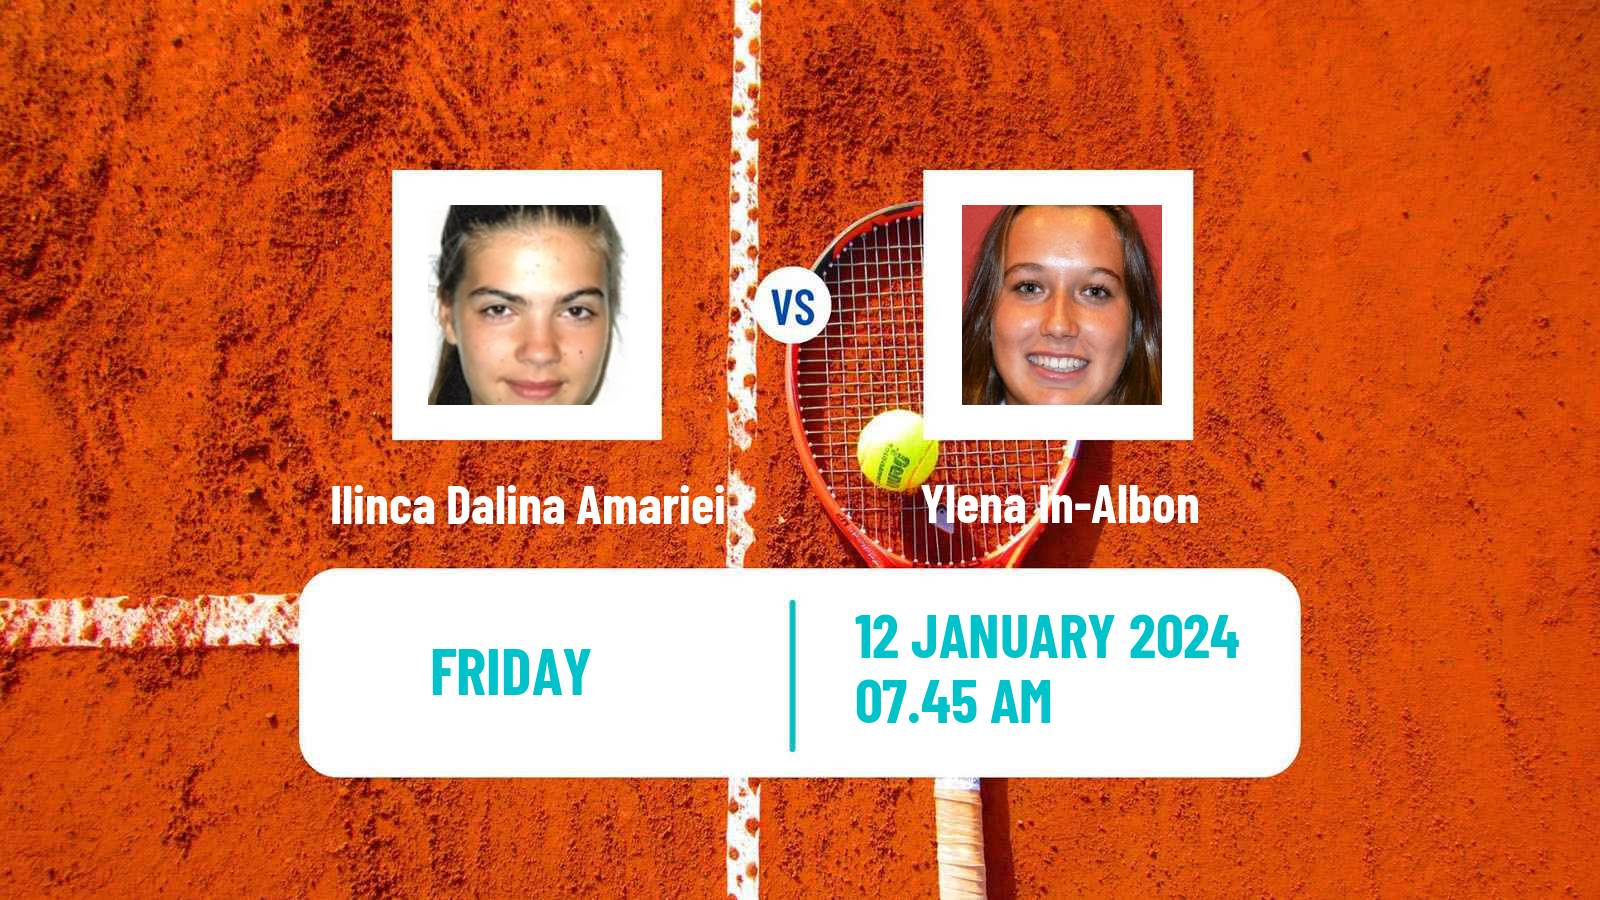 Tennis ITF W35 Antalya Women Ilinca Dalina Amariei - Ylena In-Albon